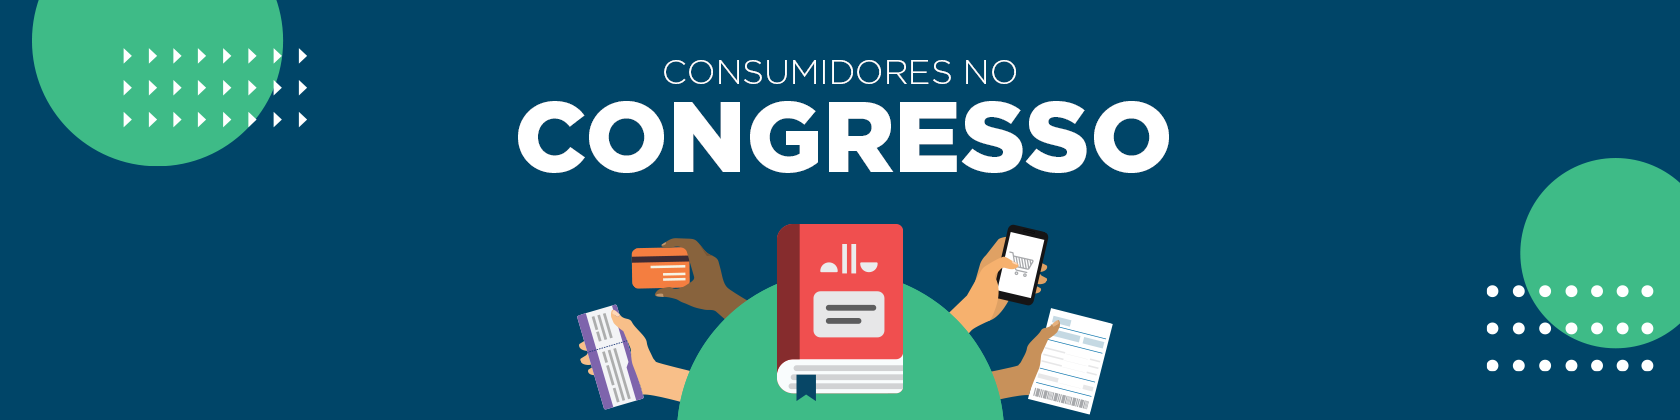 Consumidores no Congresso